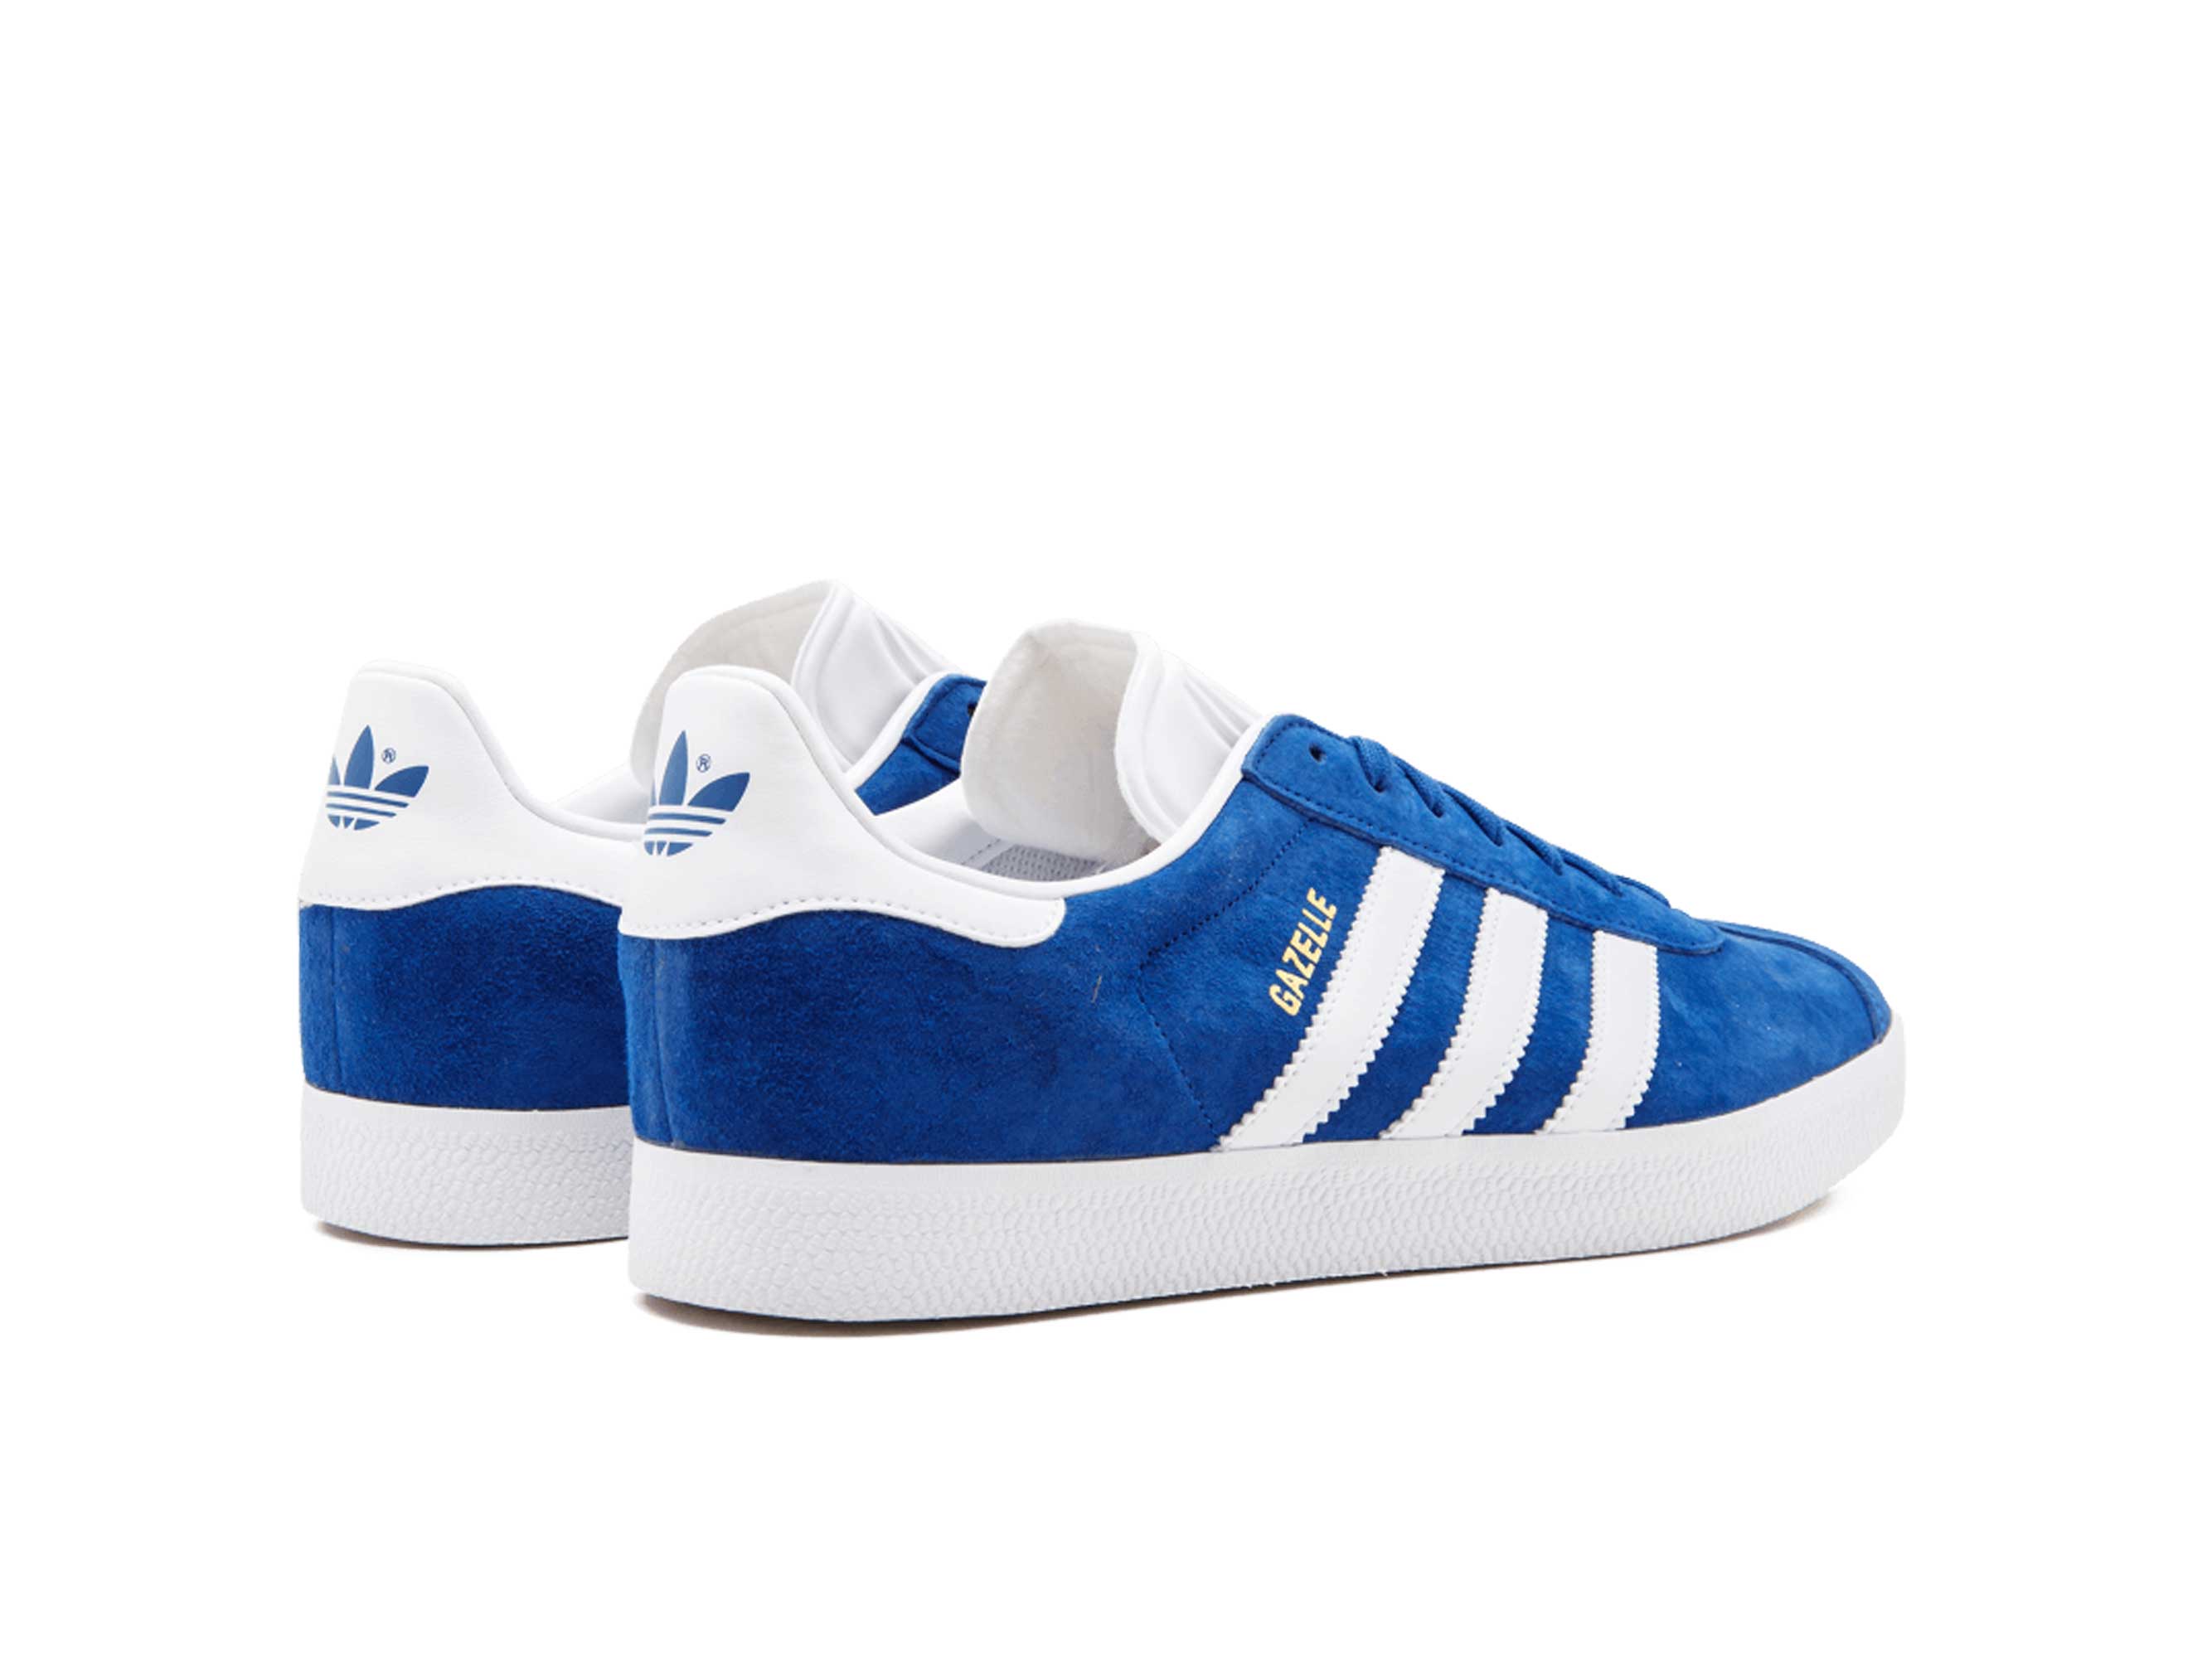 Купить кроссовки адидас газели. Adidas Gazelle Blue. Adidas Gazelle голубые. Adidas Gazelle синие. Adidas Originals Gazelle.